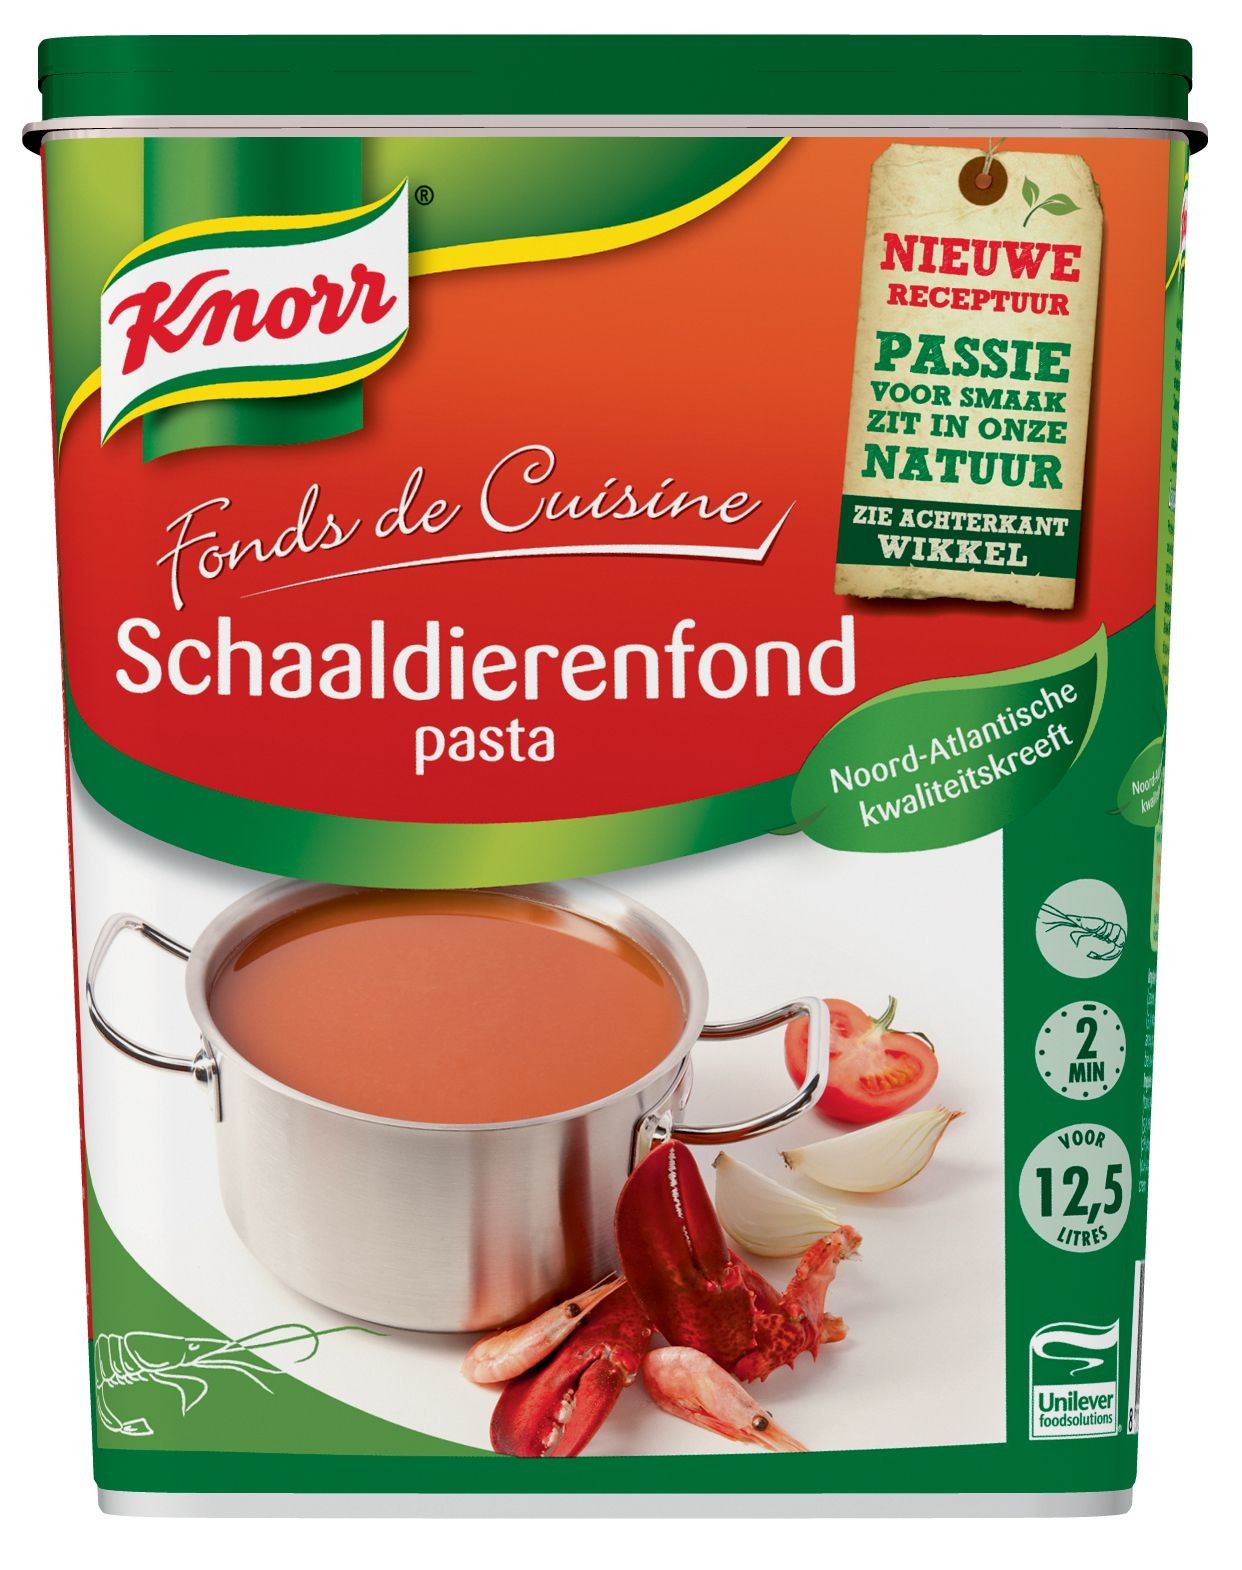 Knorr schaaldieren fond pasta 1kg